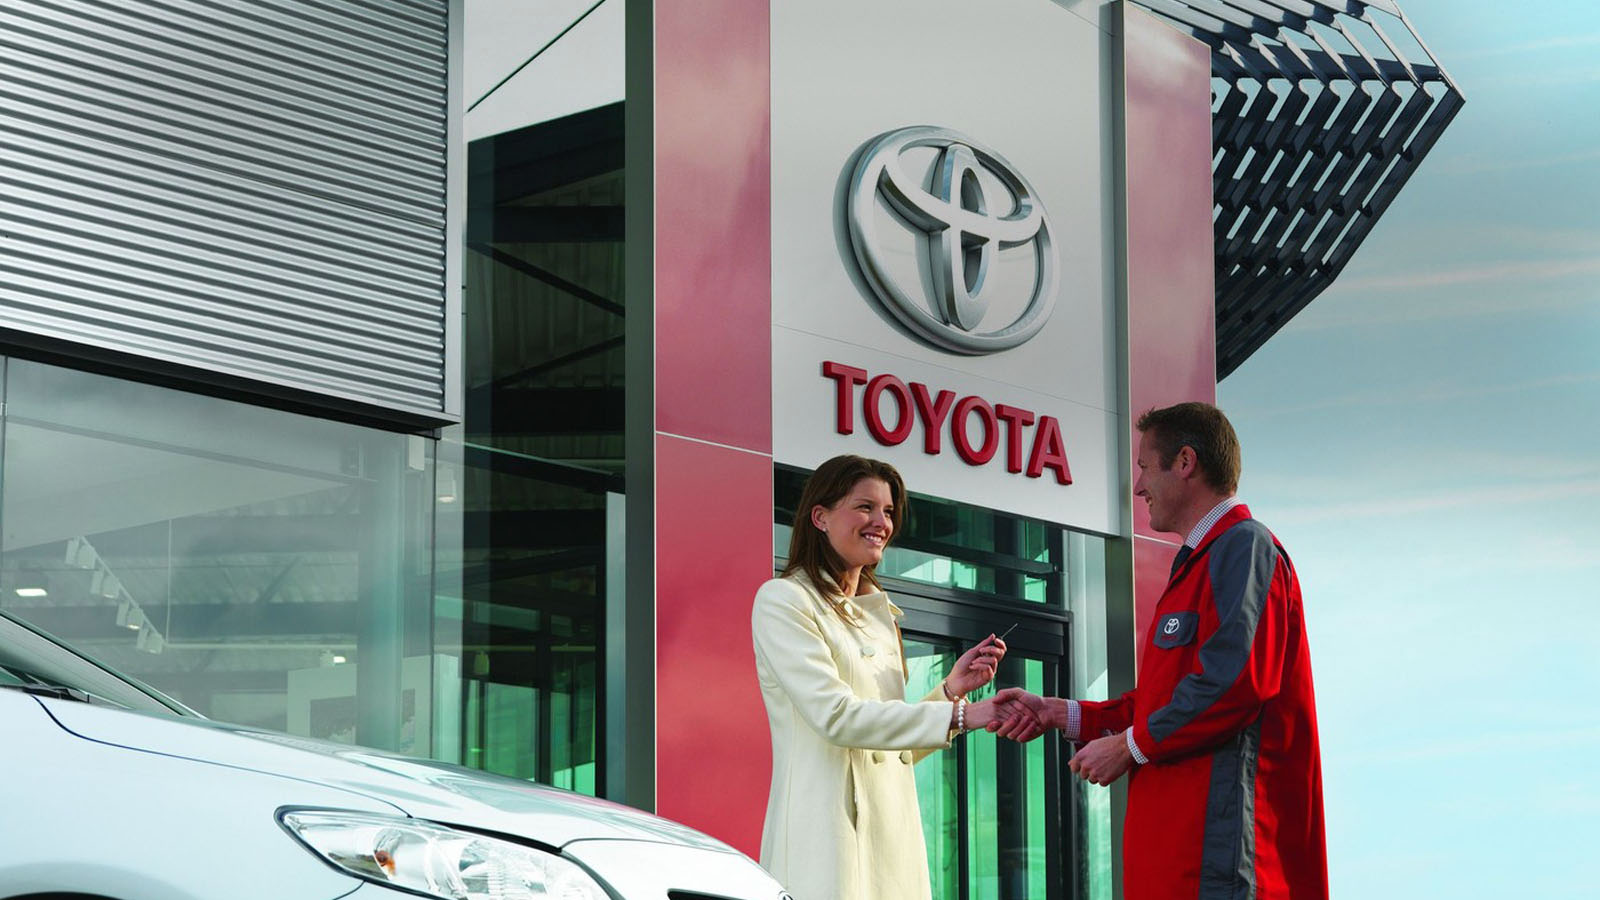 Mann und Frau vor Toyota Geschäft